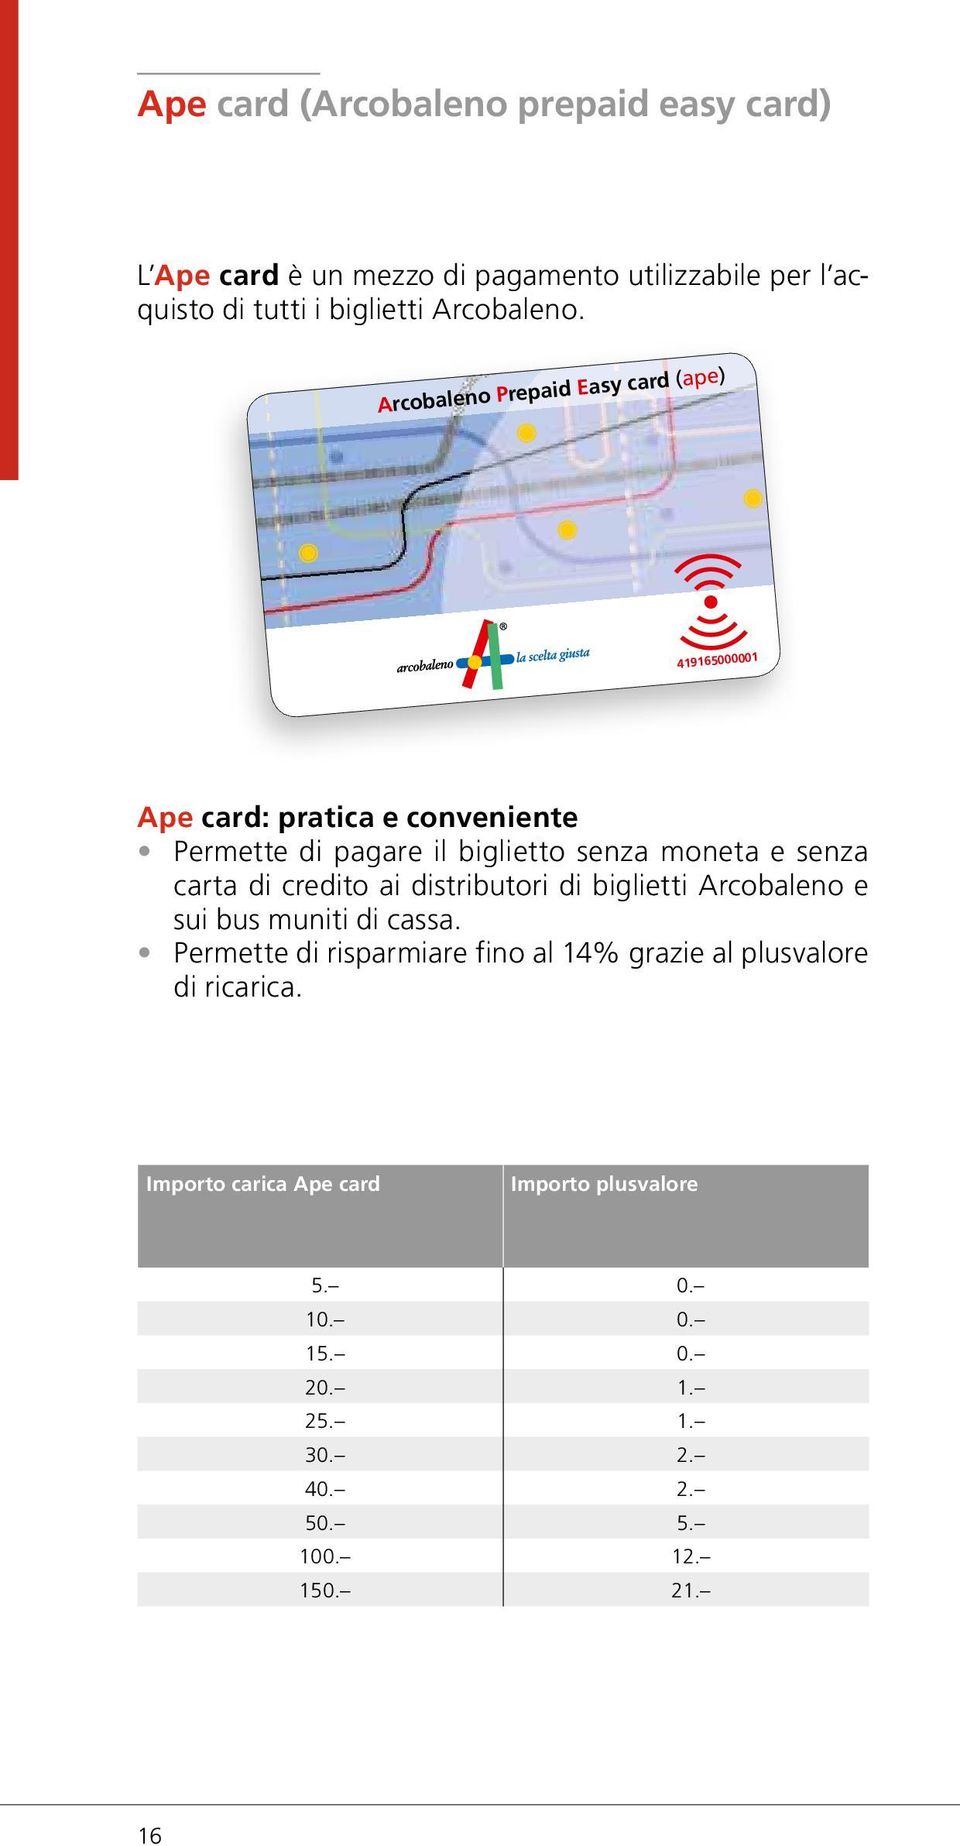 carta di credito ai distributori di biglietti Arcobaleno e sui bus muniti di cassa.